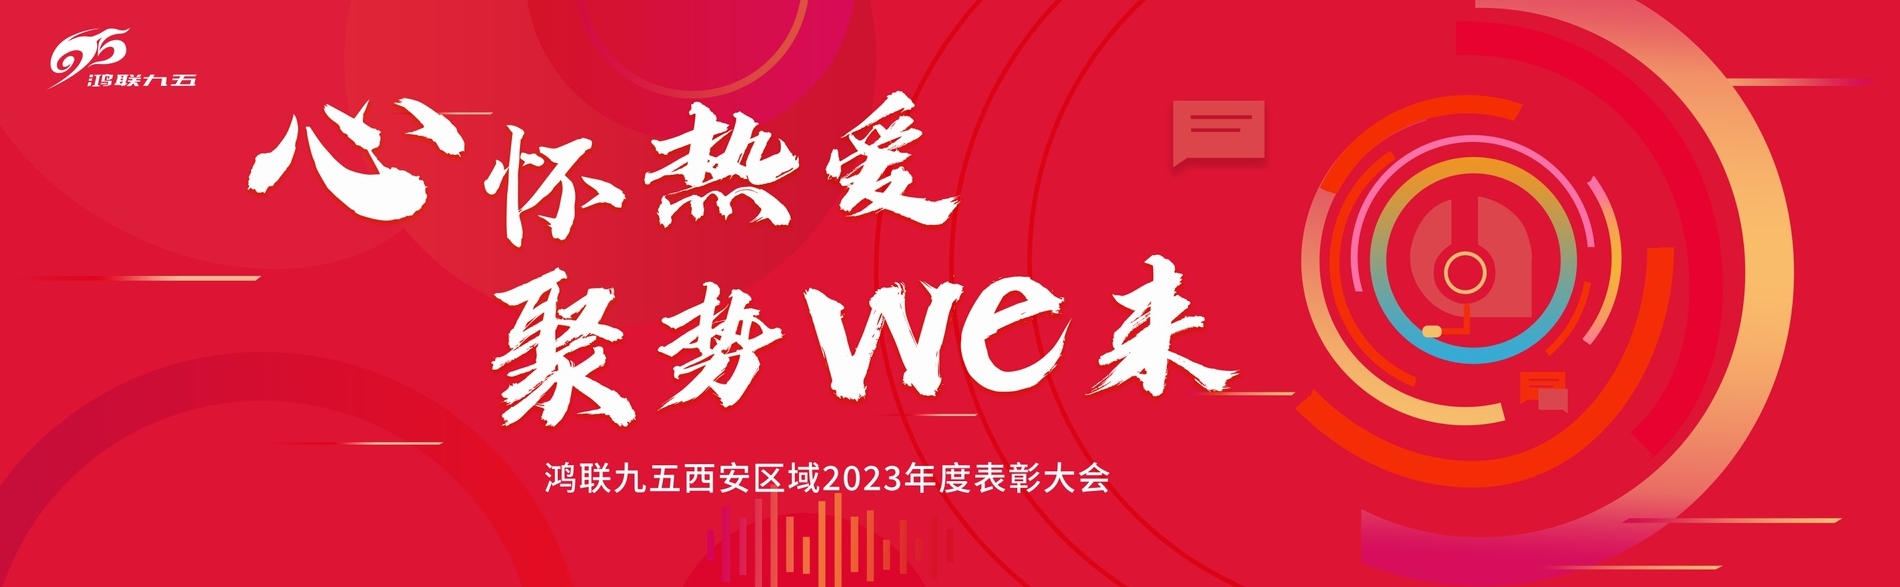 金沙8888js官方西安区域2023年度表彰大会圆满举办！